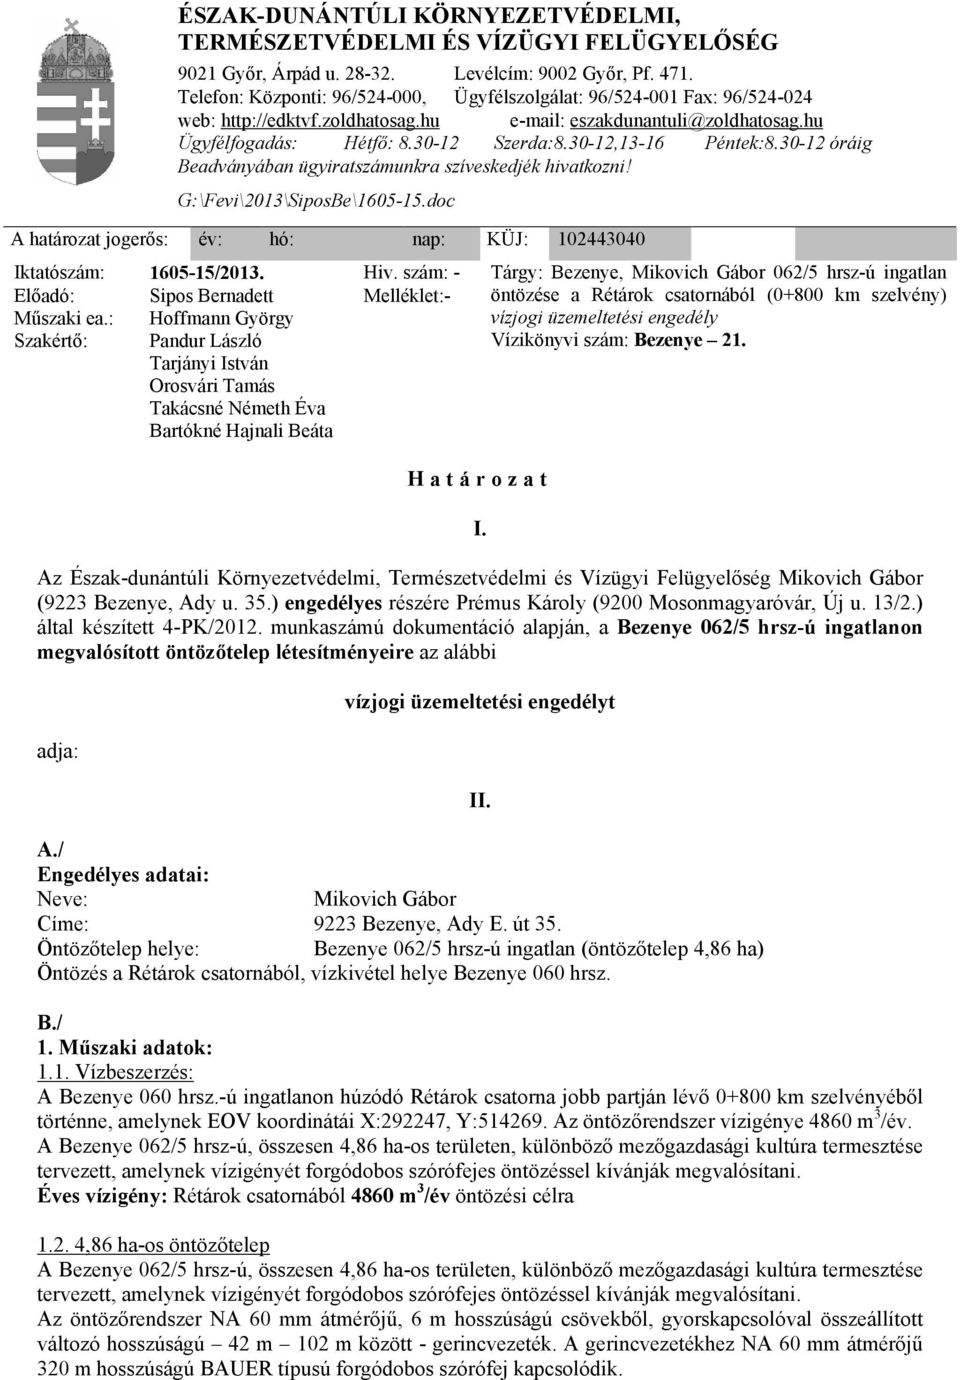 Tárgy: Bezenye, Mikovich Gábor 062/5 hrsz-ú ingatlan öntözése a Rétárok csatornából (0+800 km szelvény) vízjogi üzemeltetési engedély Vízikönyvi szám: Bezenye 21.